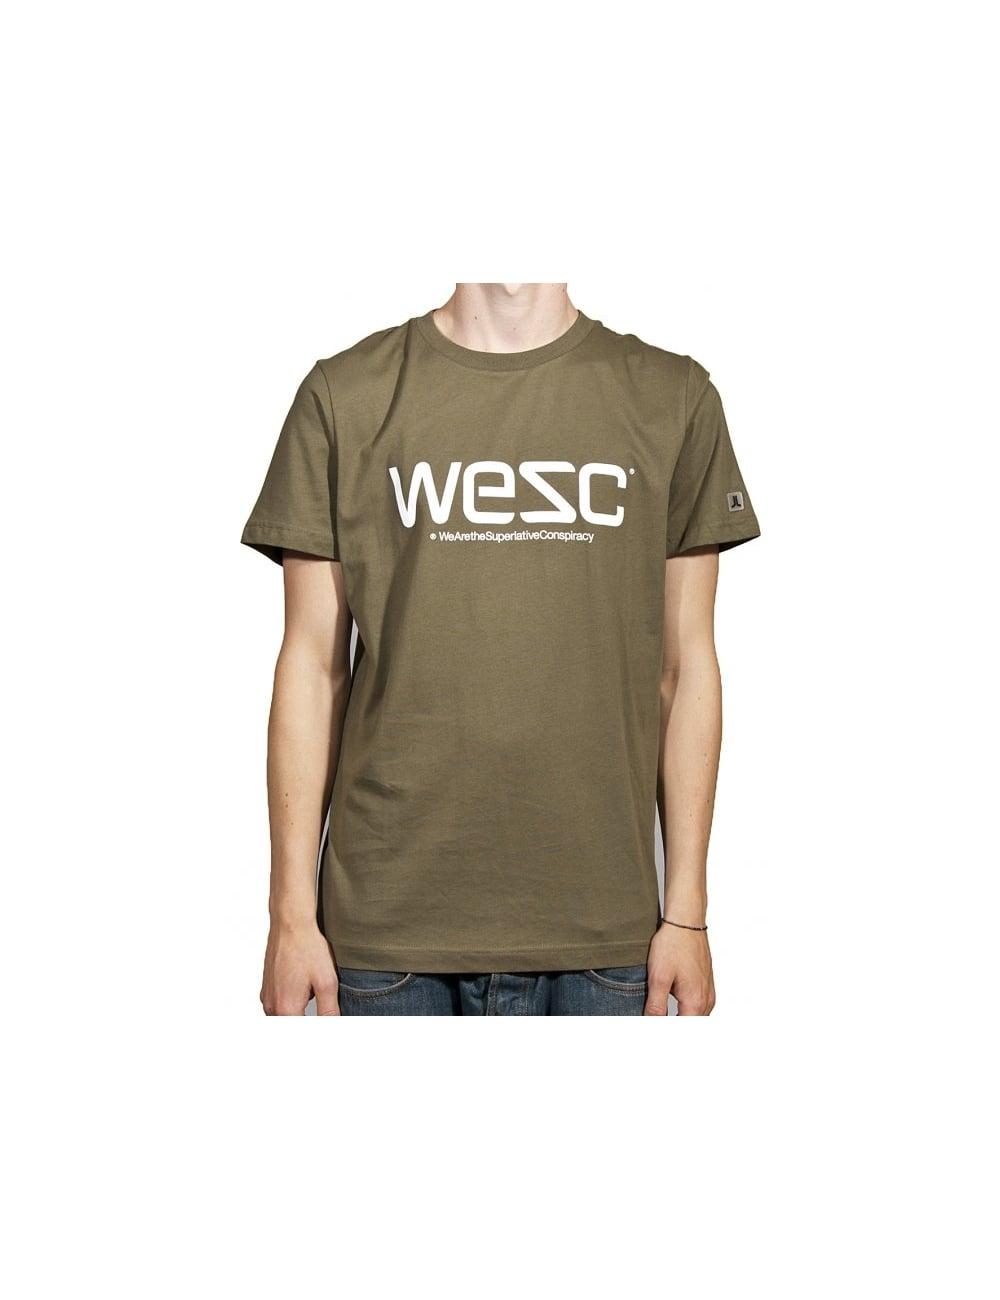 WeSC Logo - WESC WeSC Logo T - Ivy Green - WESC from iConsume UK